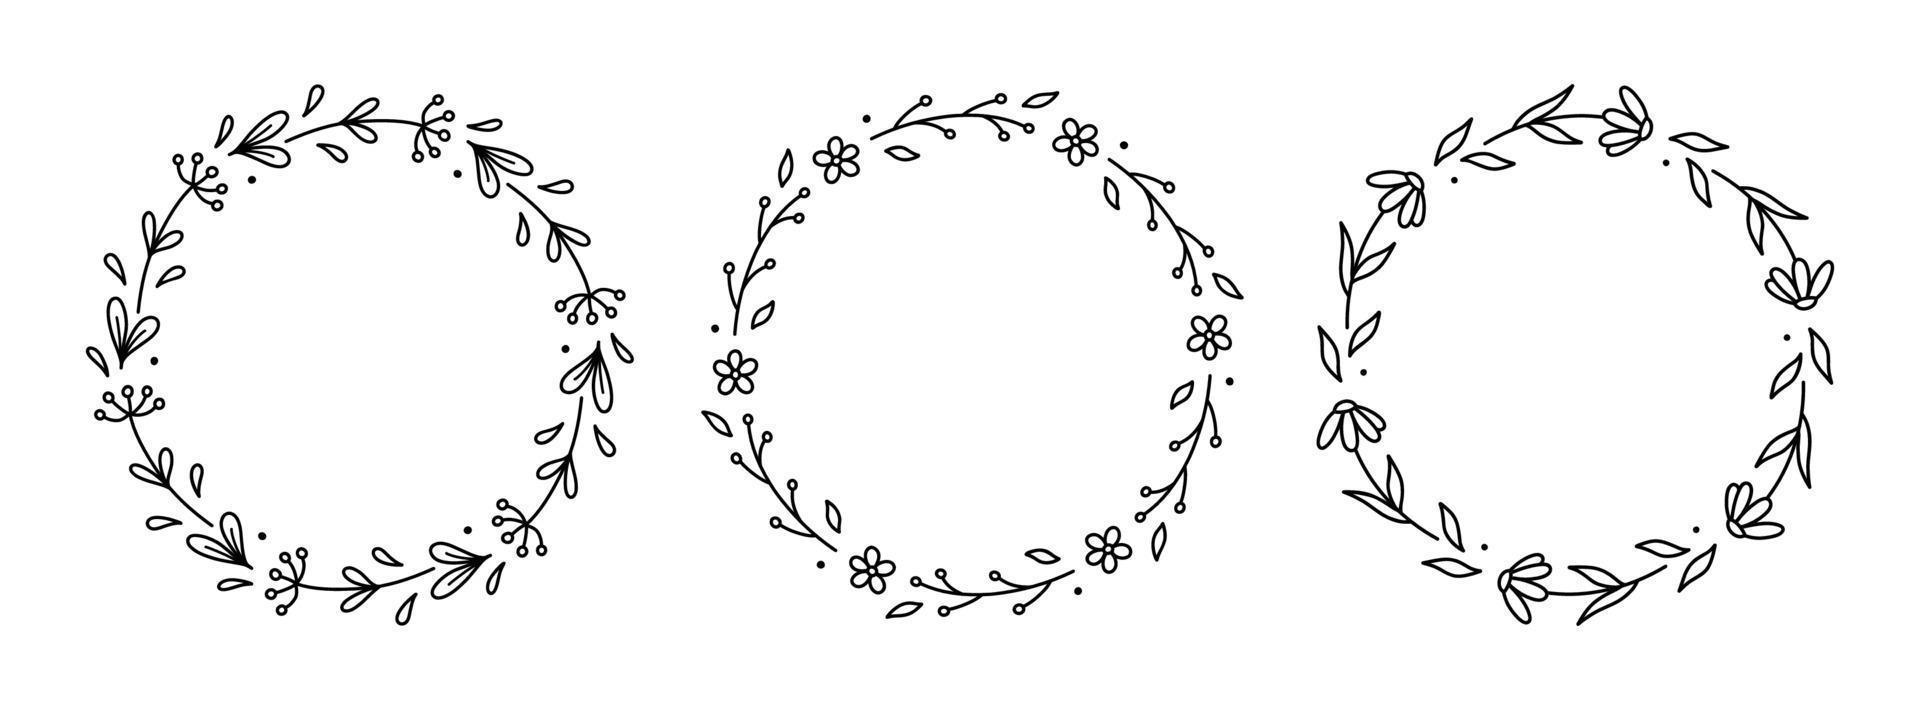 conjunto de coronas florales de primavera aisladas sobre fondo blanco. marcos redondos con flores. ilustración vectorial dibujada a mano en estilo garabato. perfecto para tarjetas, invitaciones, decoraciones, logotipos, varios diseños vector